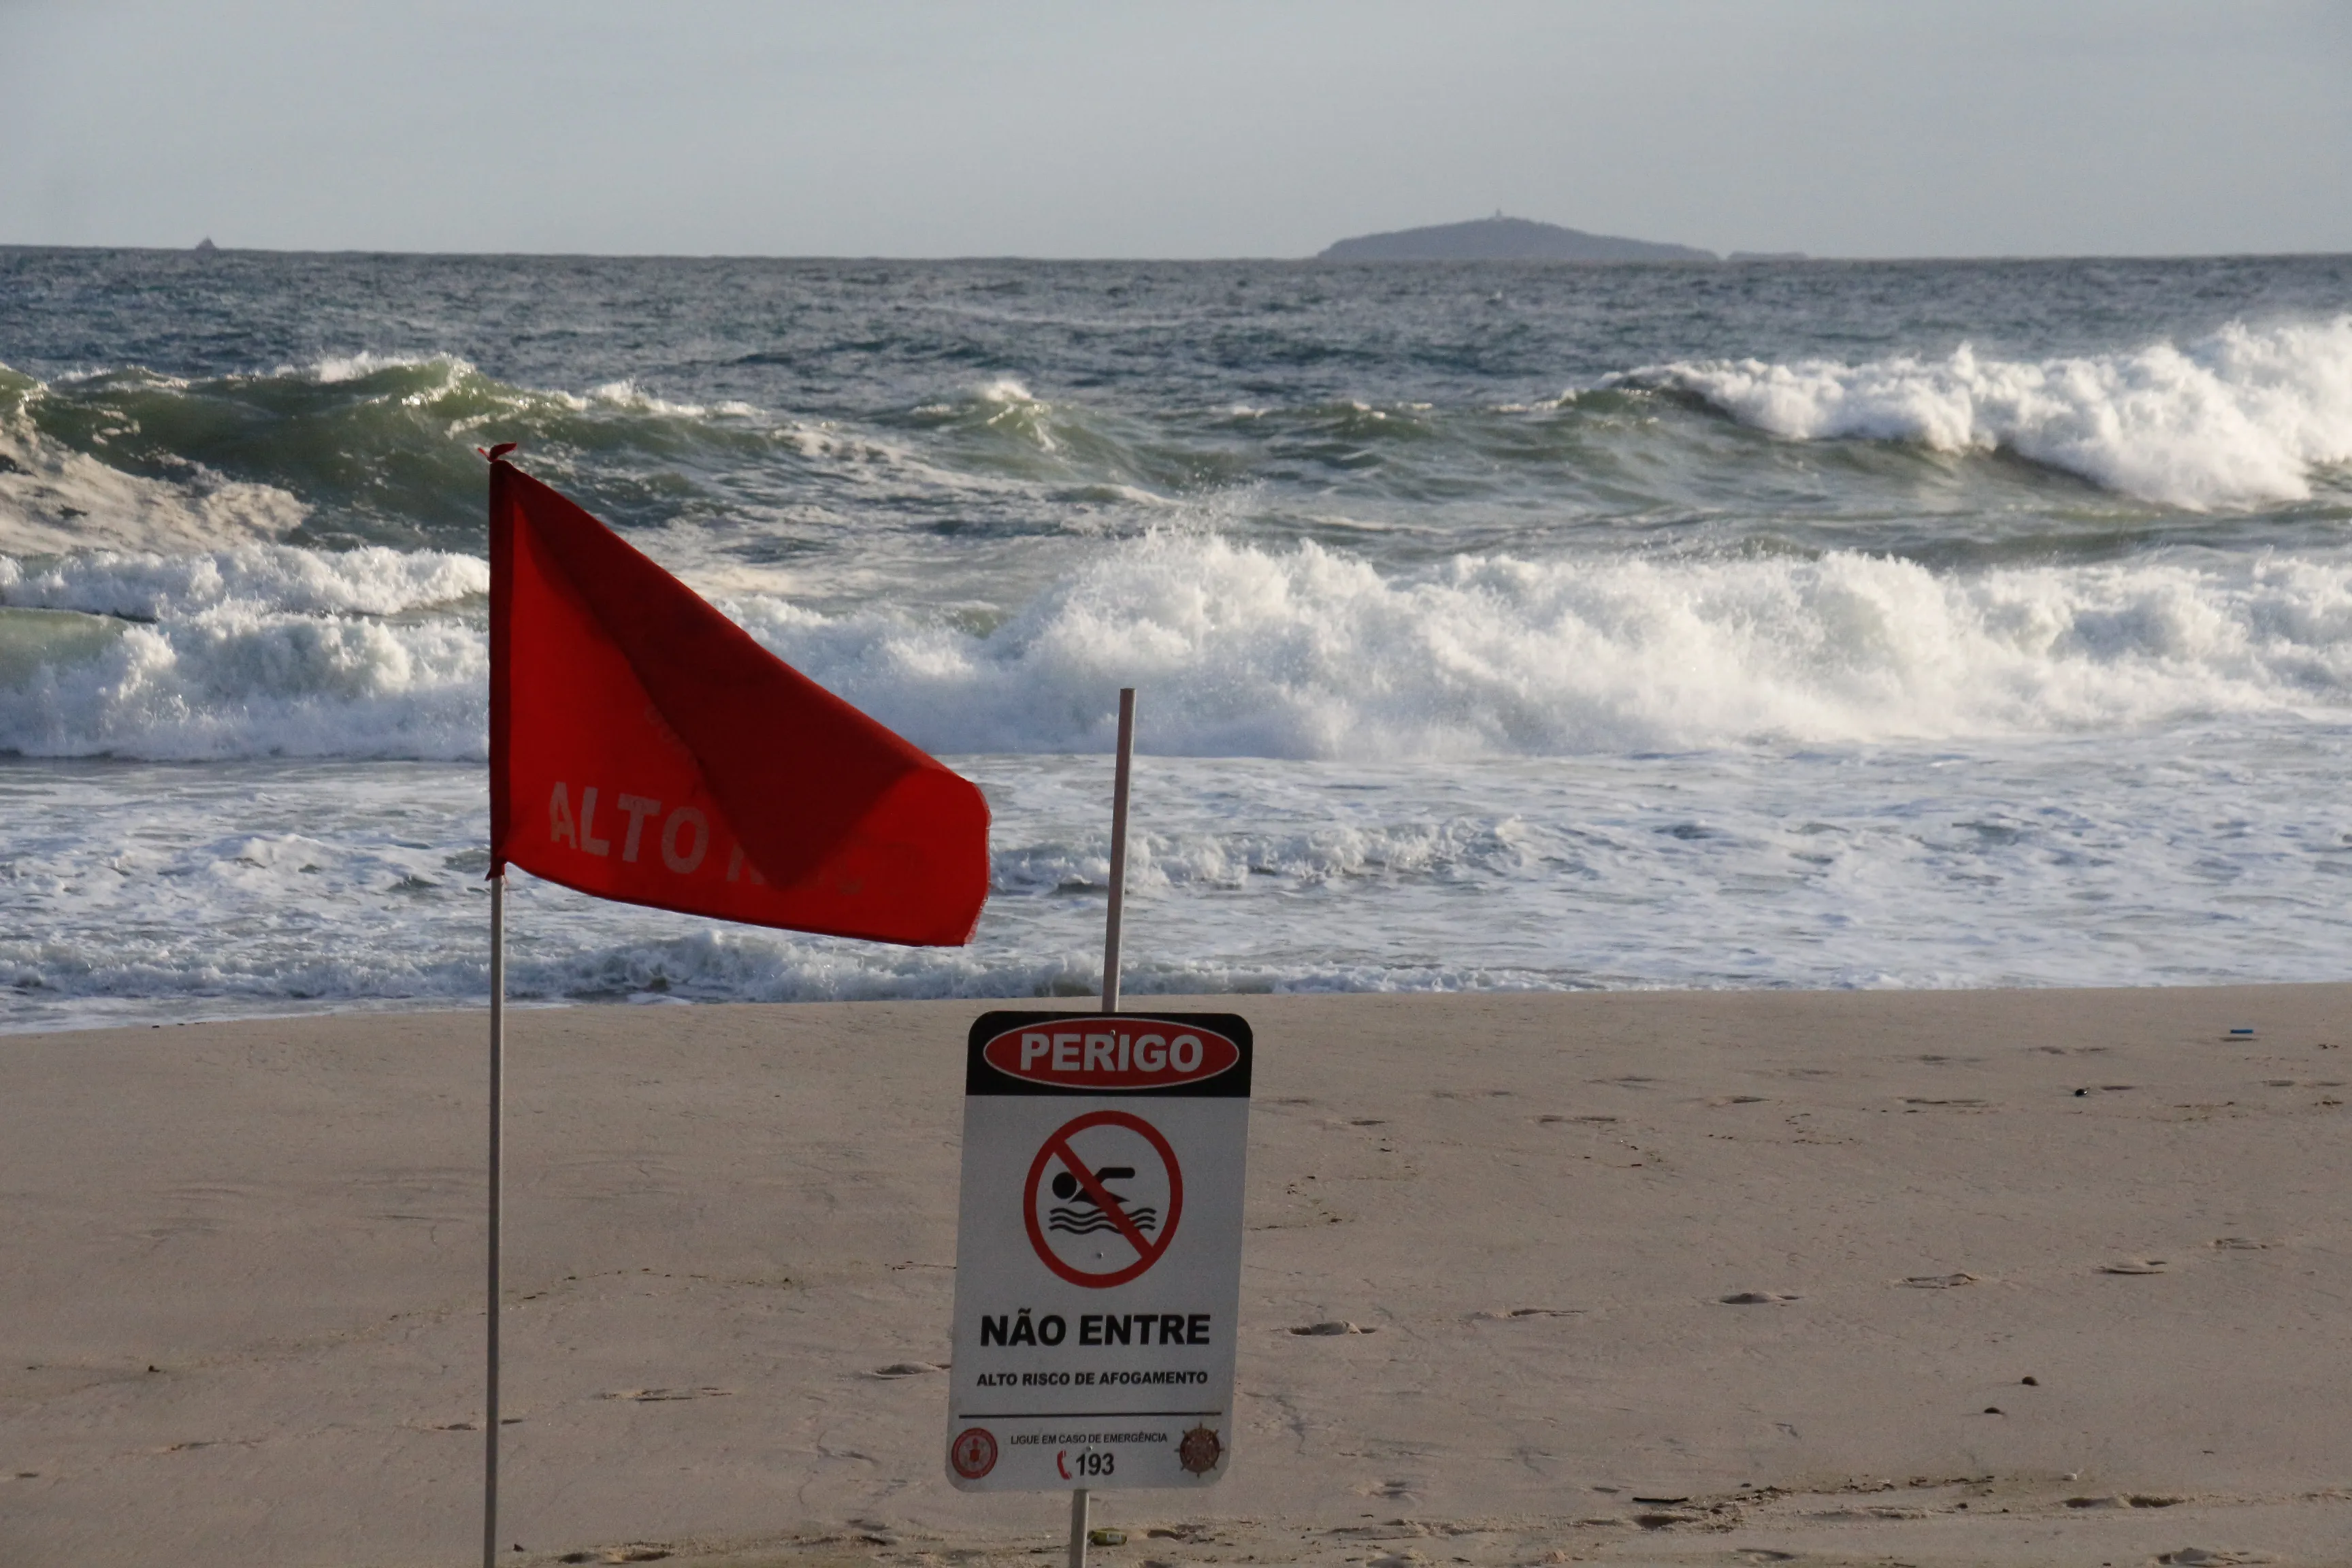 Bandeiras vermelhas e placas de perigo foram instaladas na areia das praias para orientar os banhistas